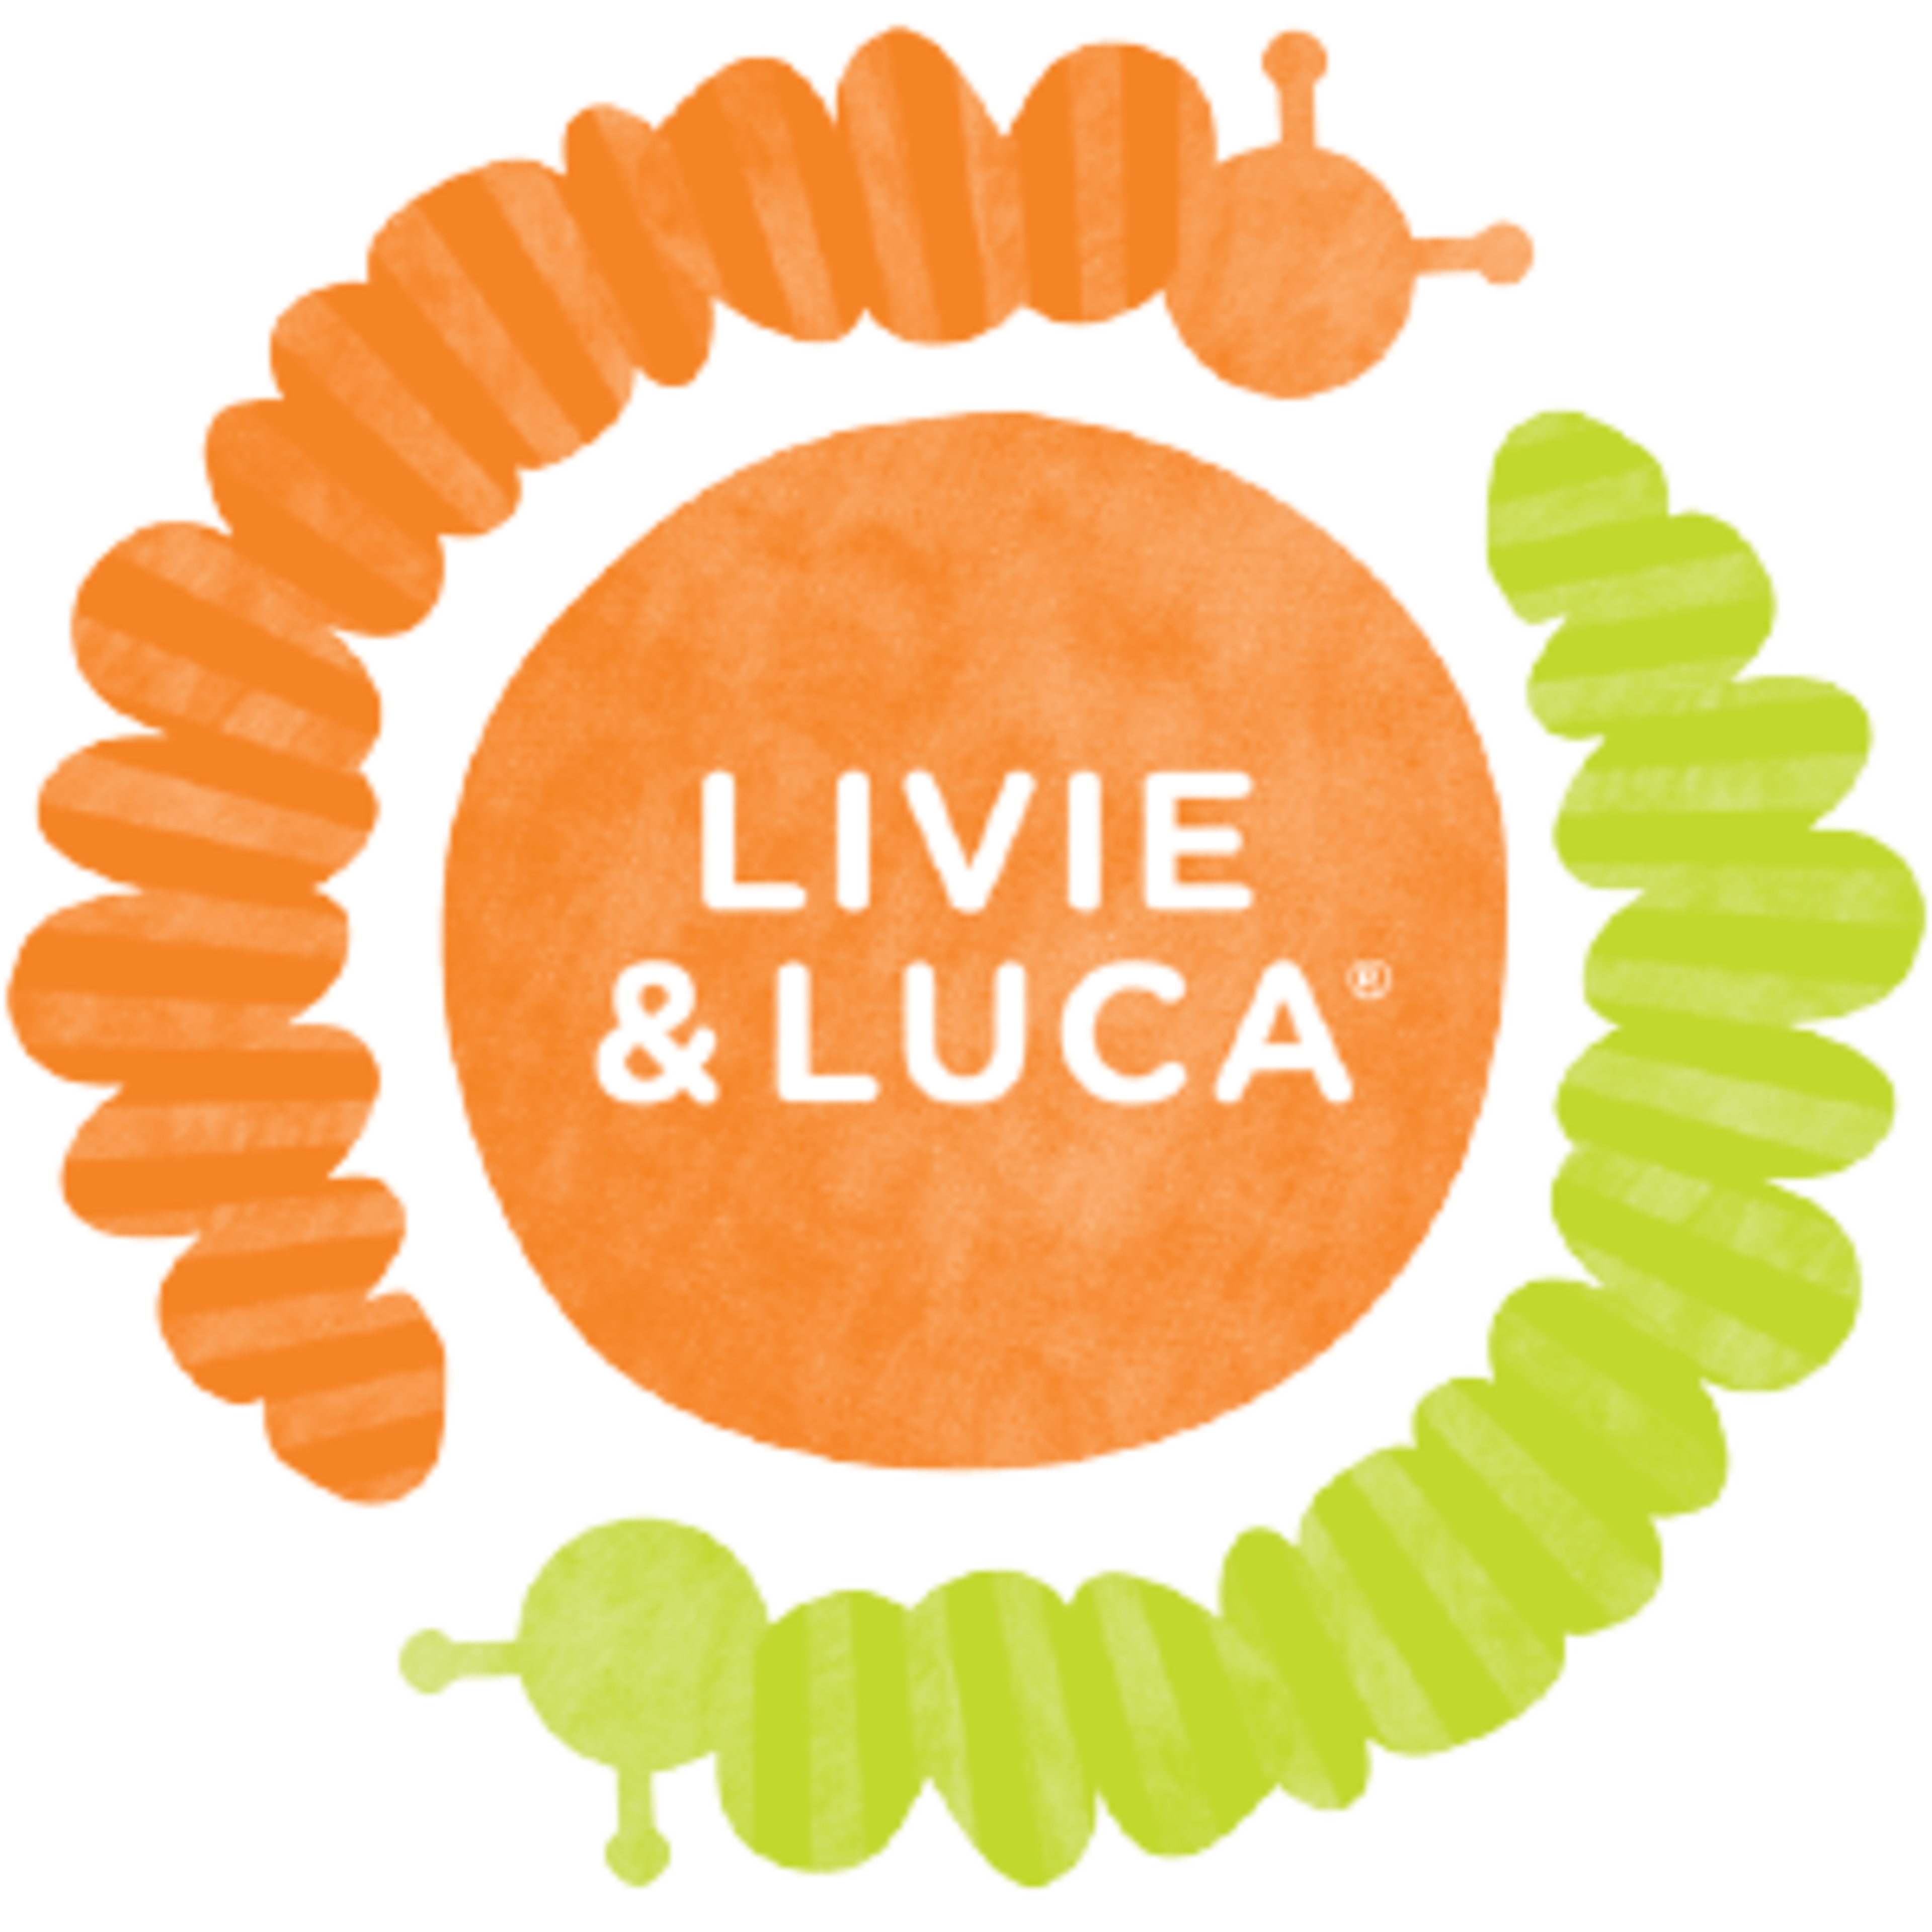 Livie & Luca Code